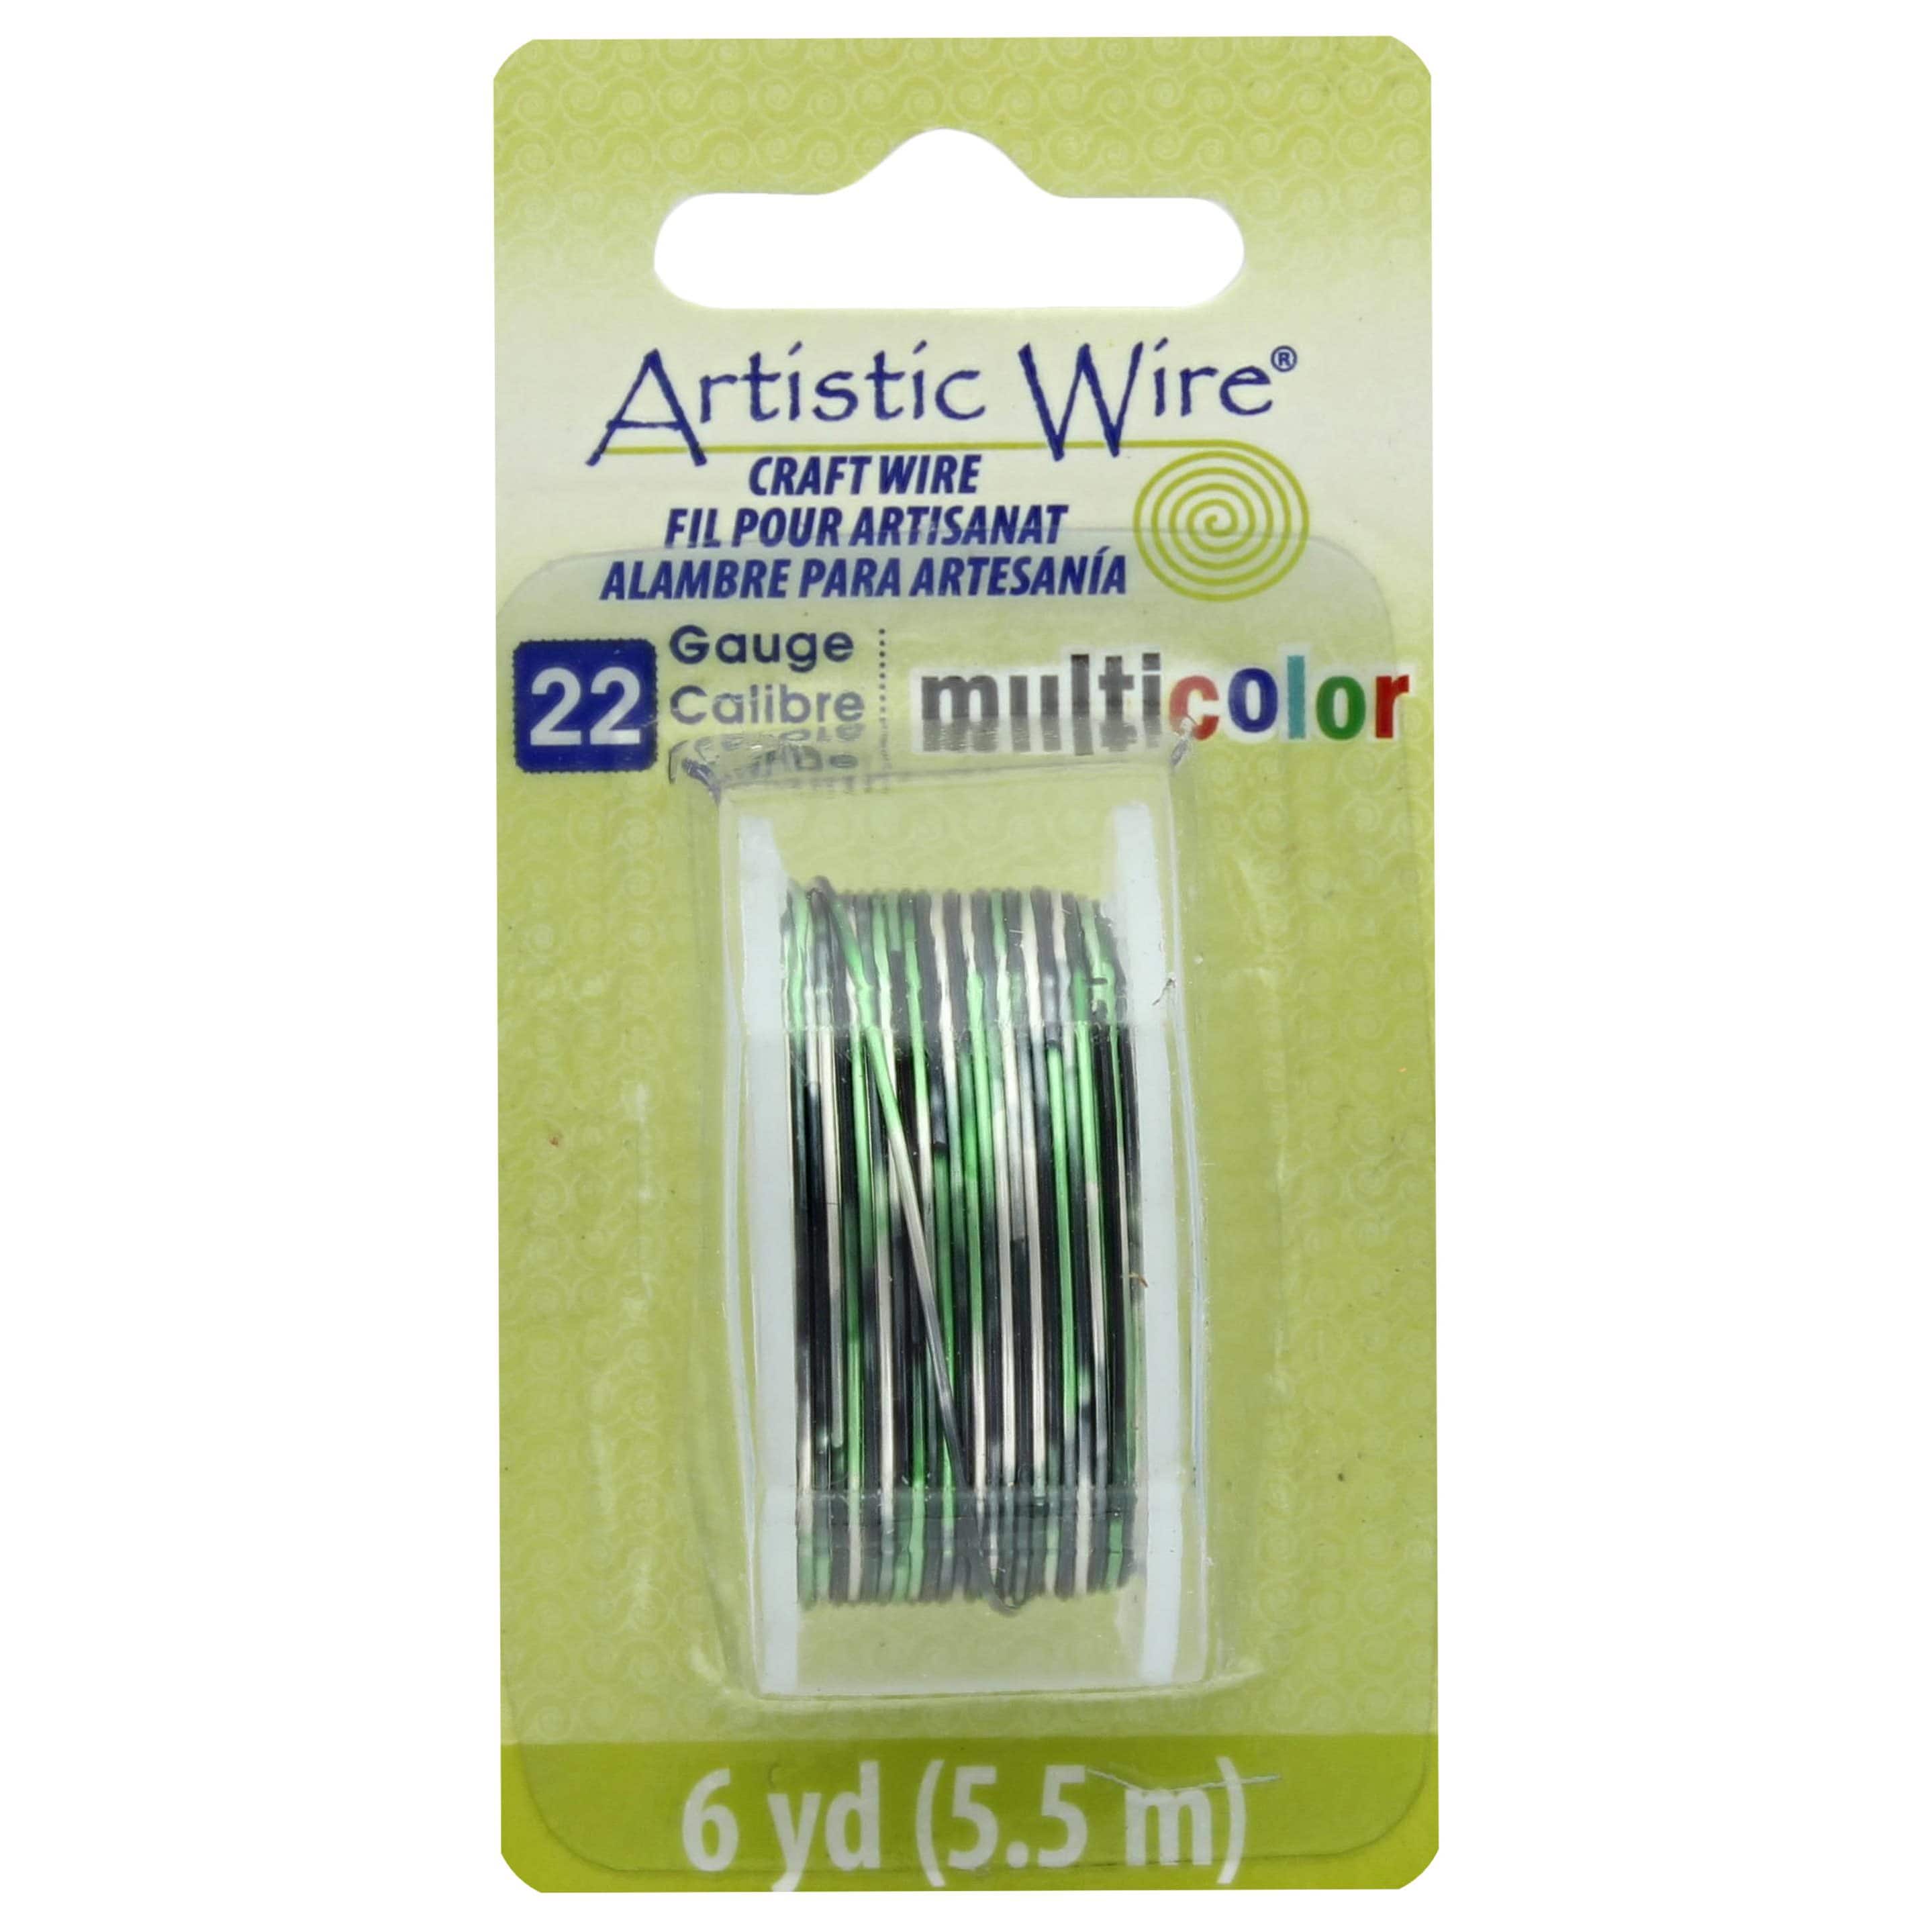 Artistic Wire, Multicolor, 22 Gauge, Silver/Black/Green, 6yd